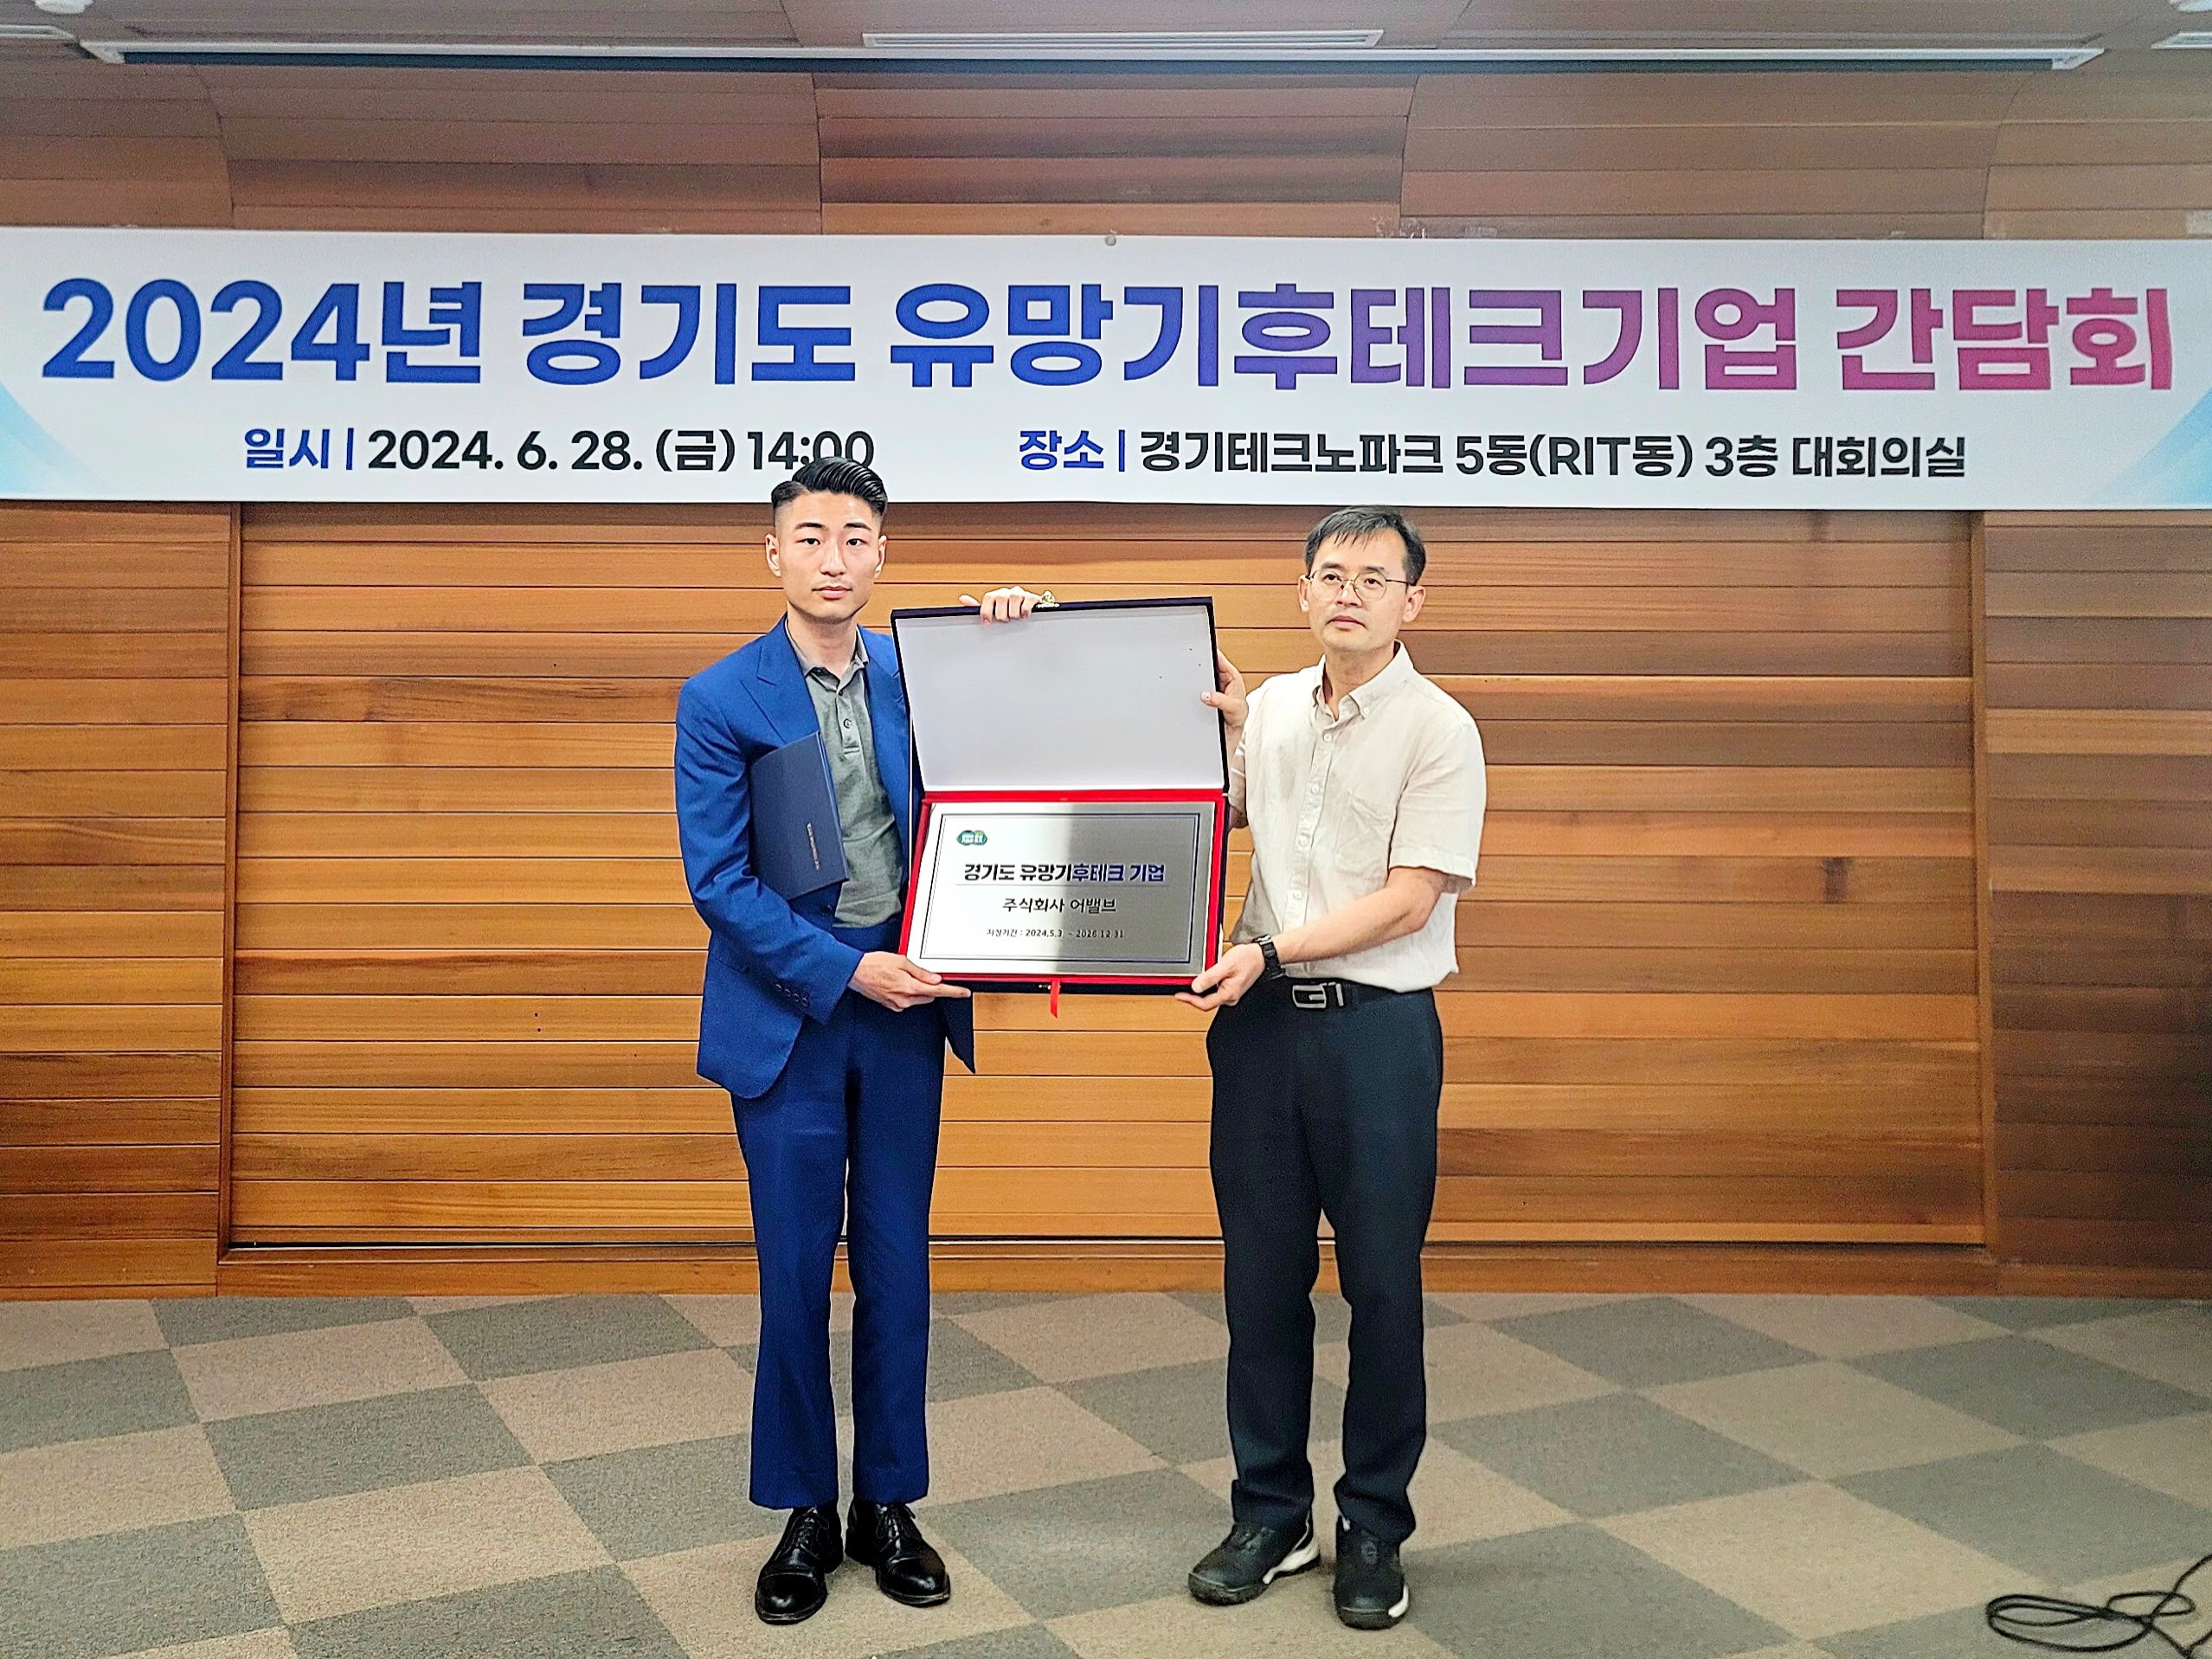 어밸브, ‘2024 경기도 유망기후테크’ 기업 선정